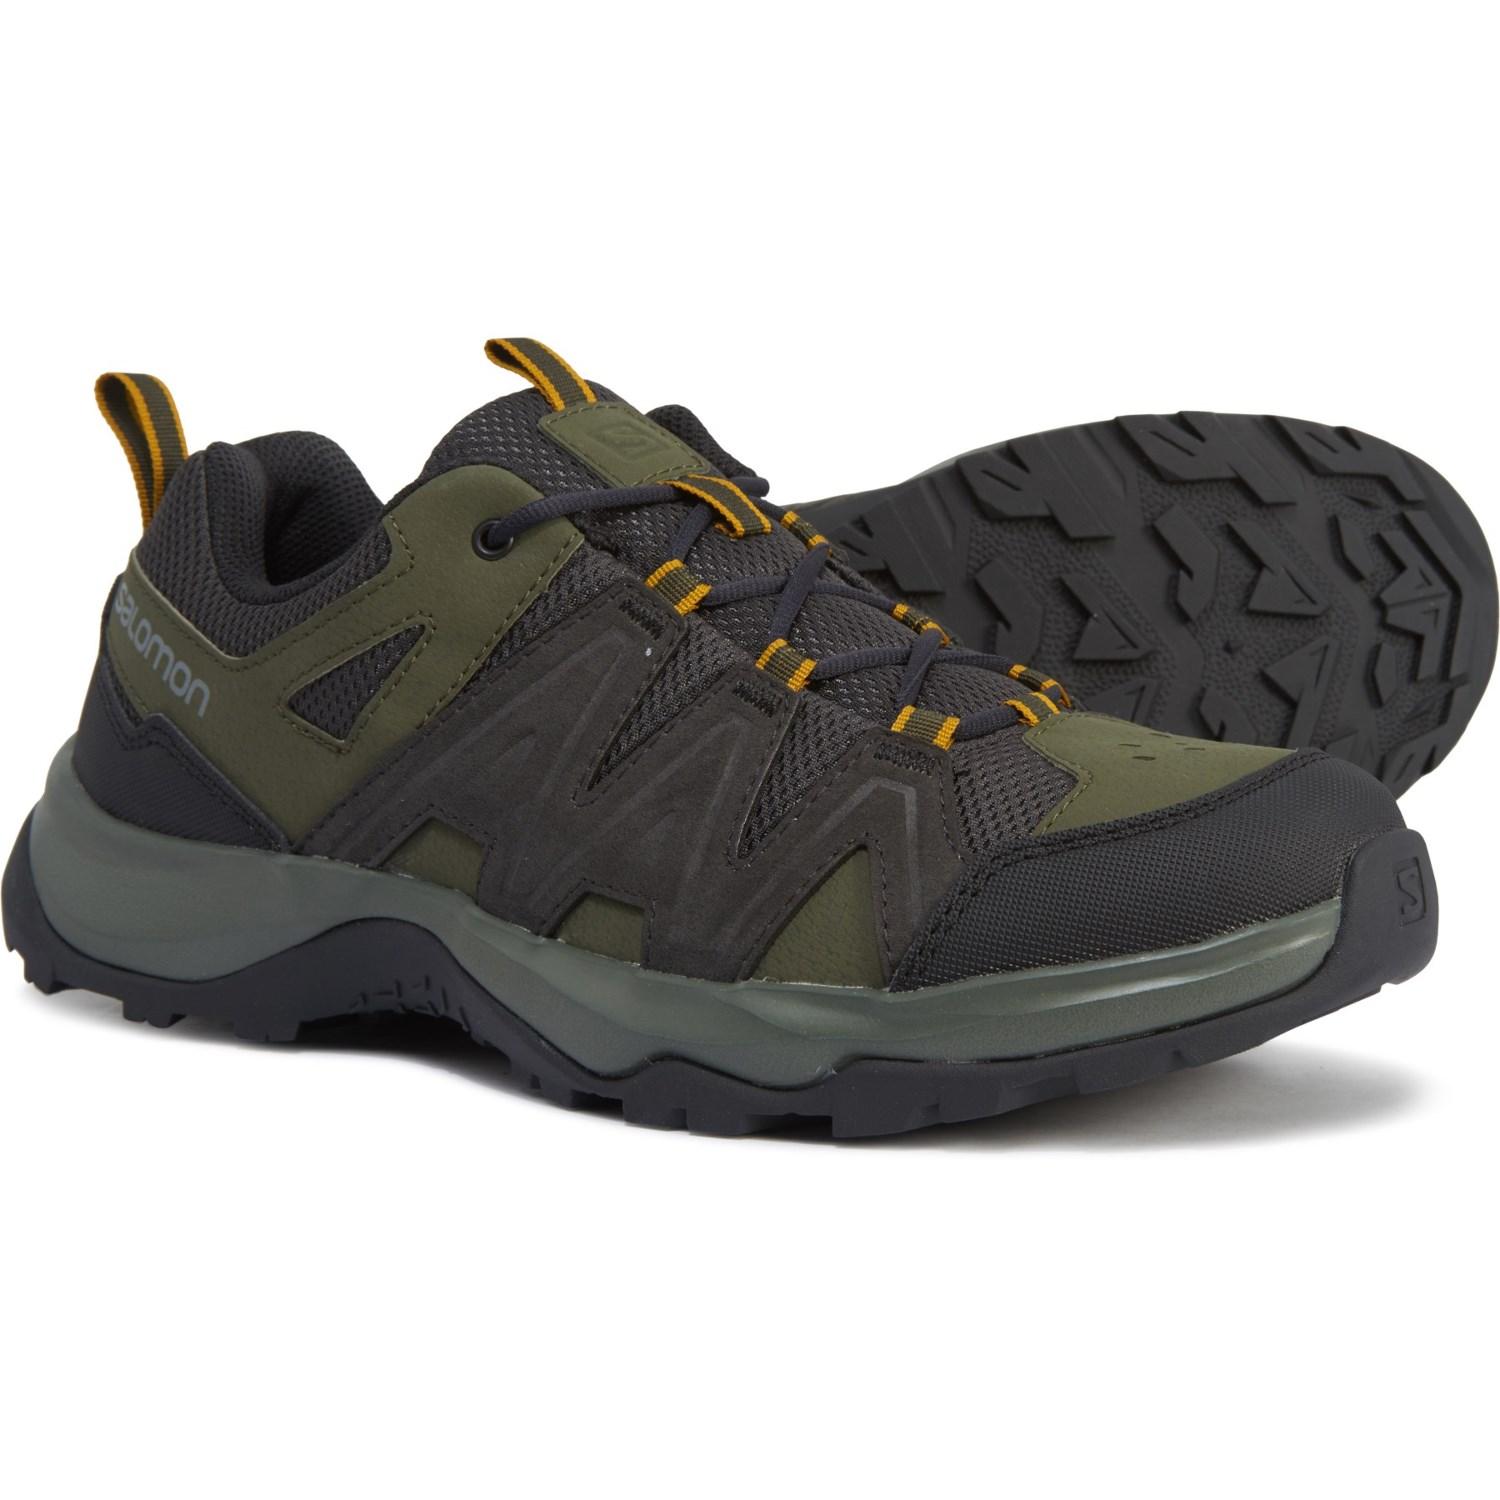 Salomon Millstream 2 Hiking Shoes in Black for Men - Lyst